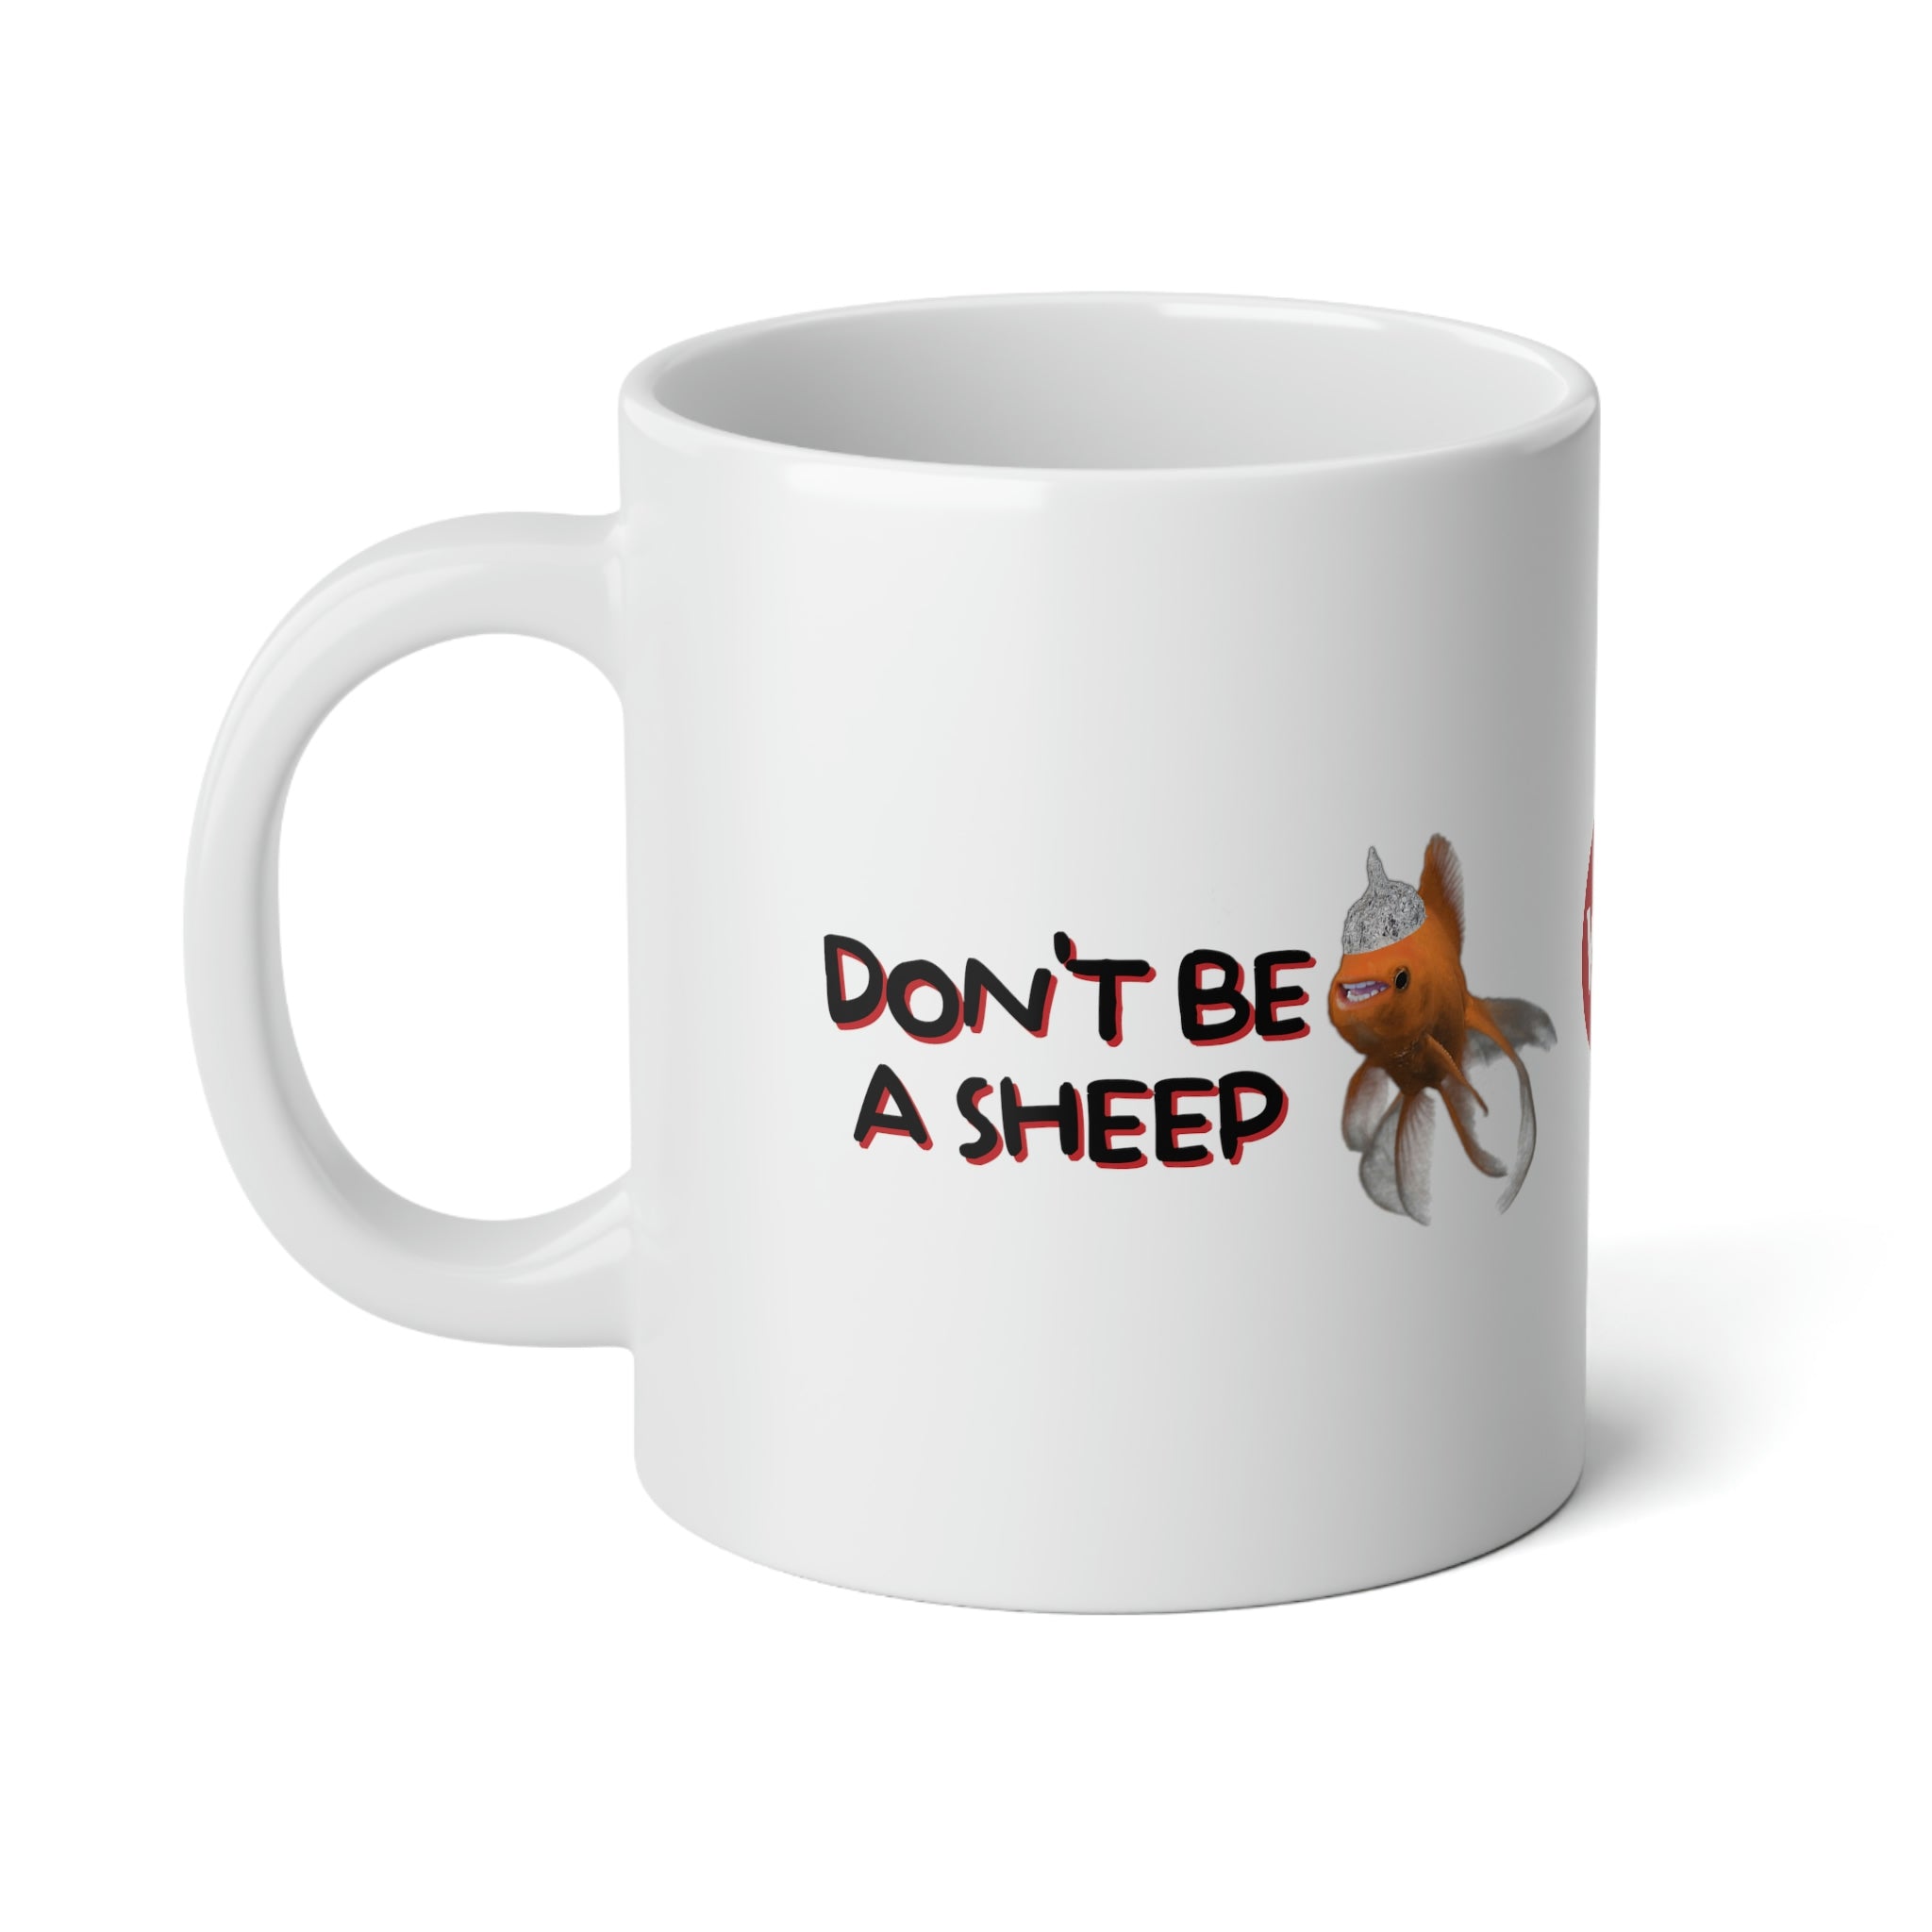 Don't Be a Sheep! Jumbo Fistable Mug, 20oz